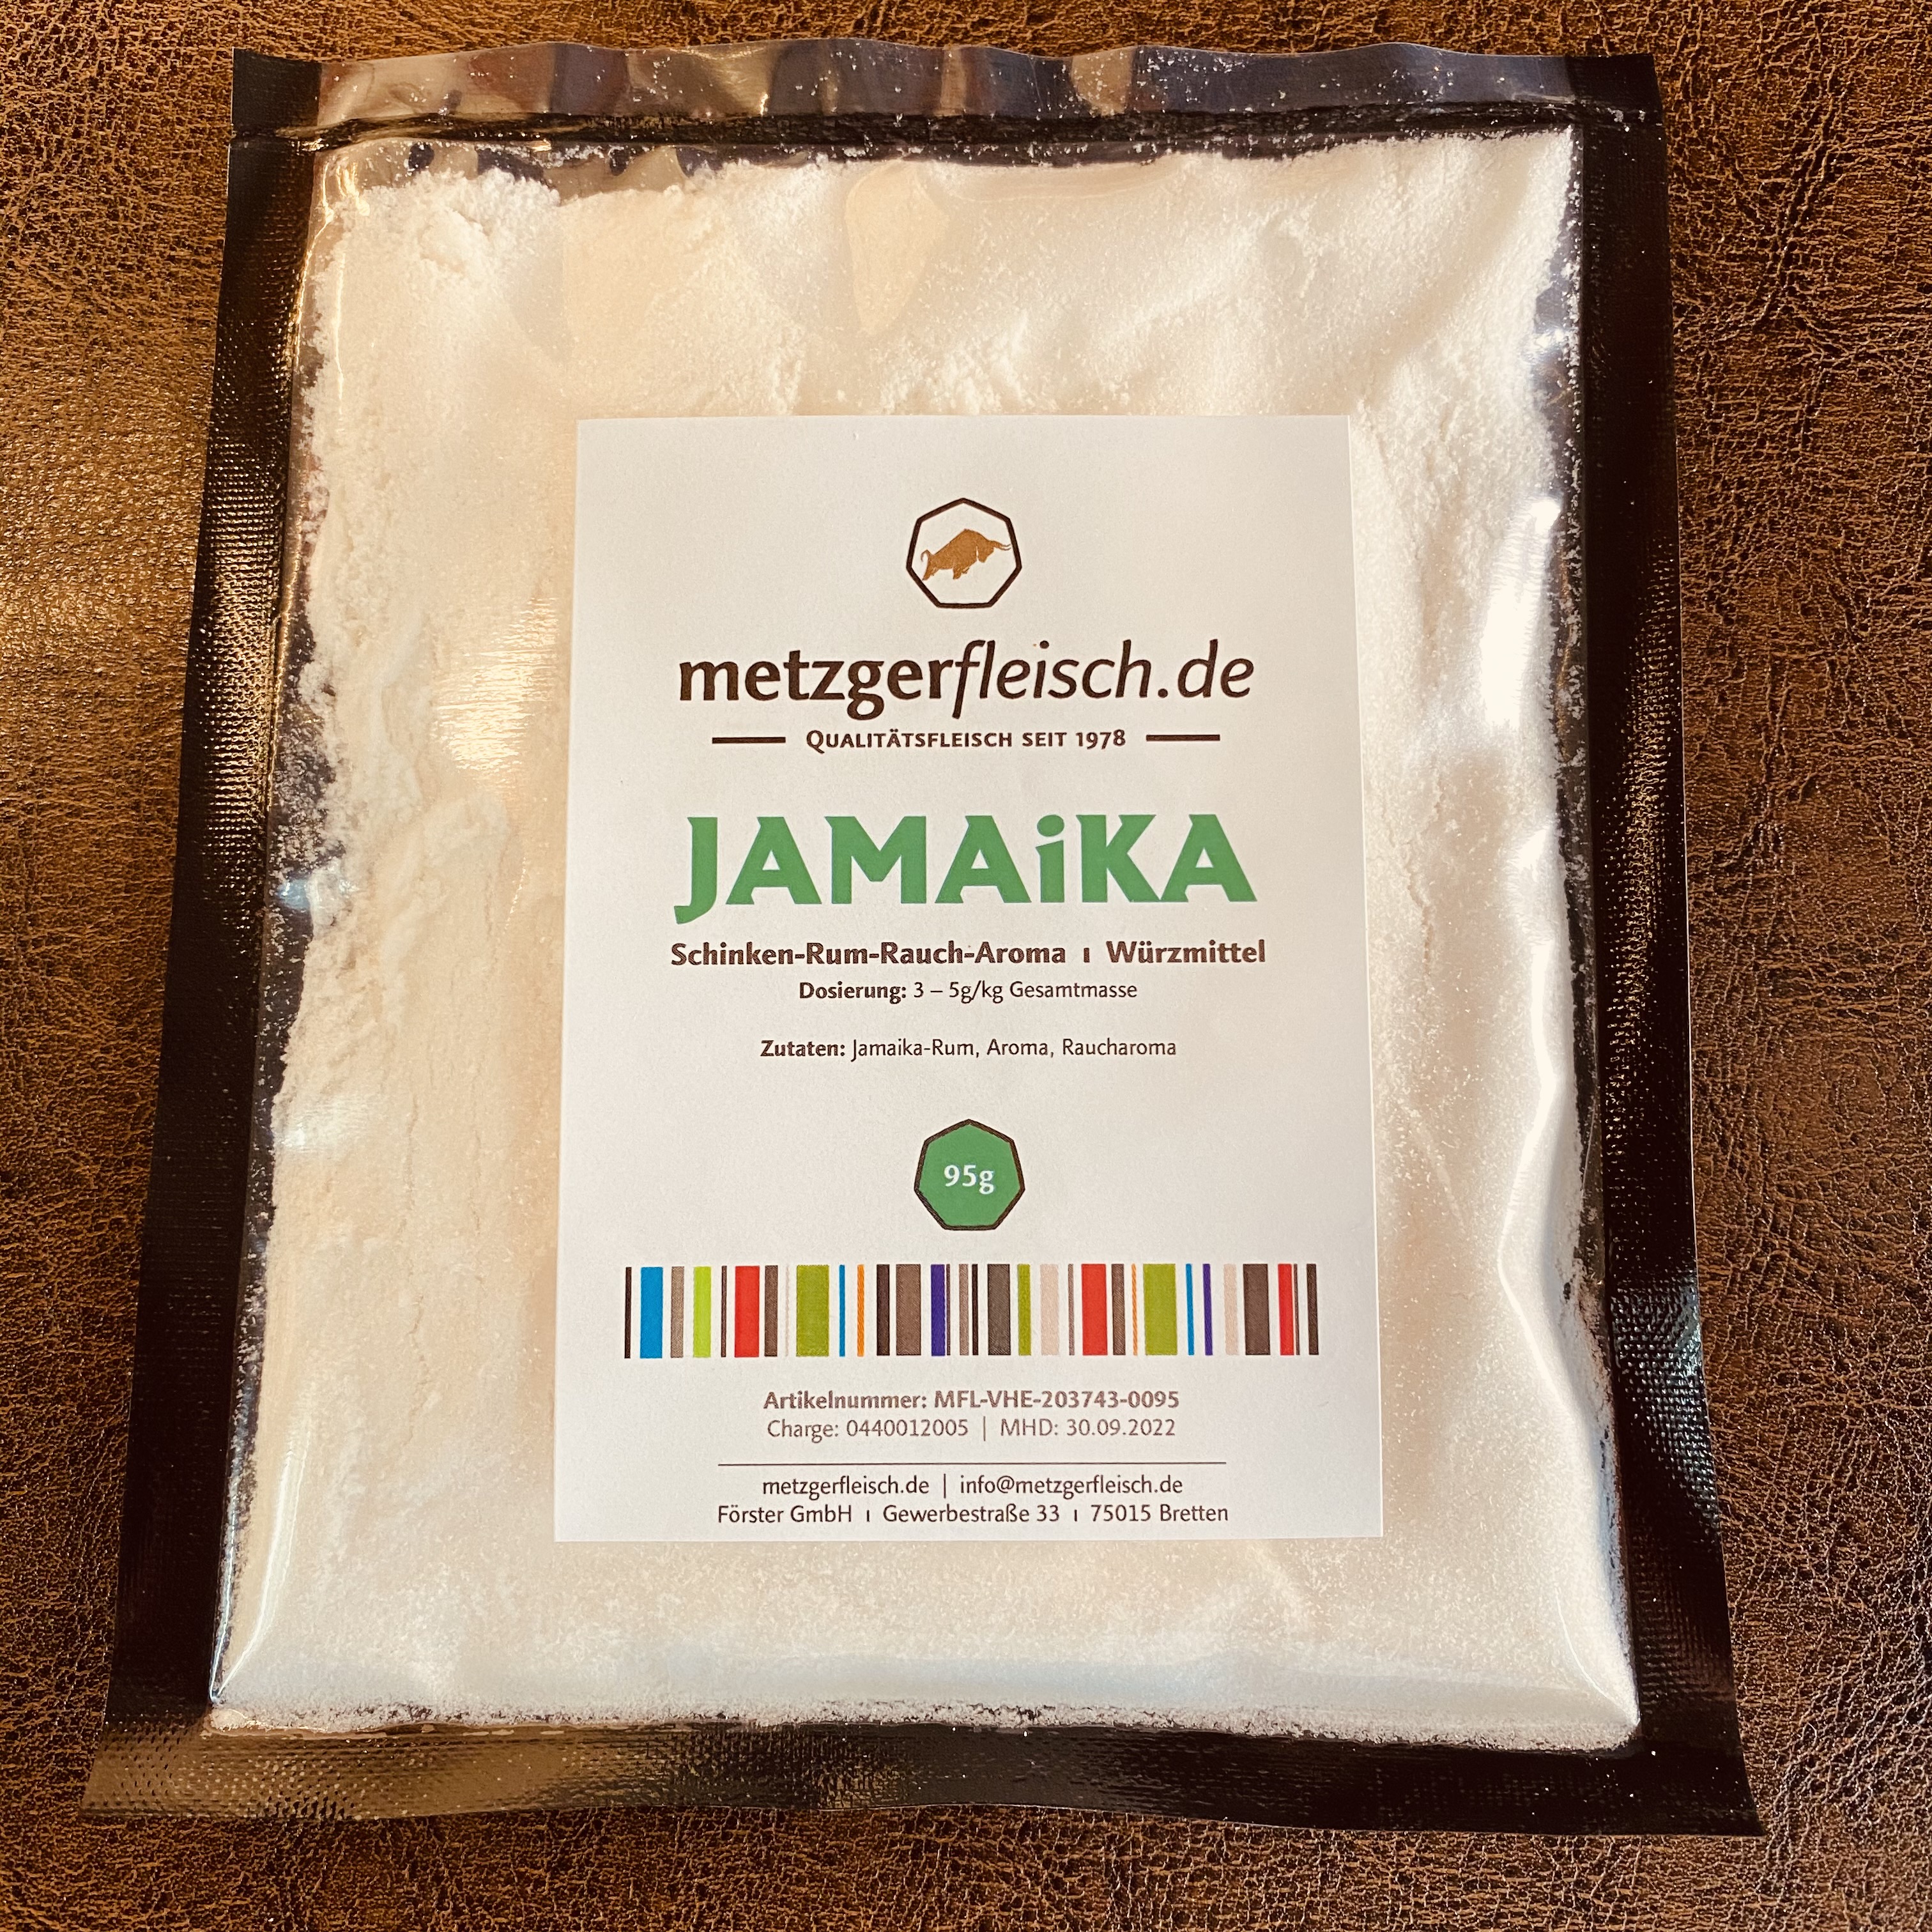 metzgerFLEISCH.de Jamaika, Schinken-Rum-Rauch-Würze für Rohwurst und Rohpökelwaren, 95g-Beutel